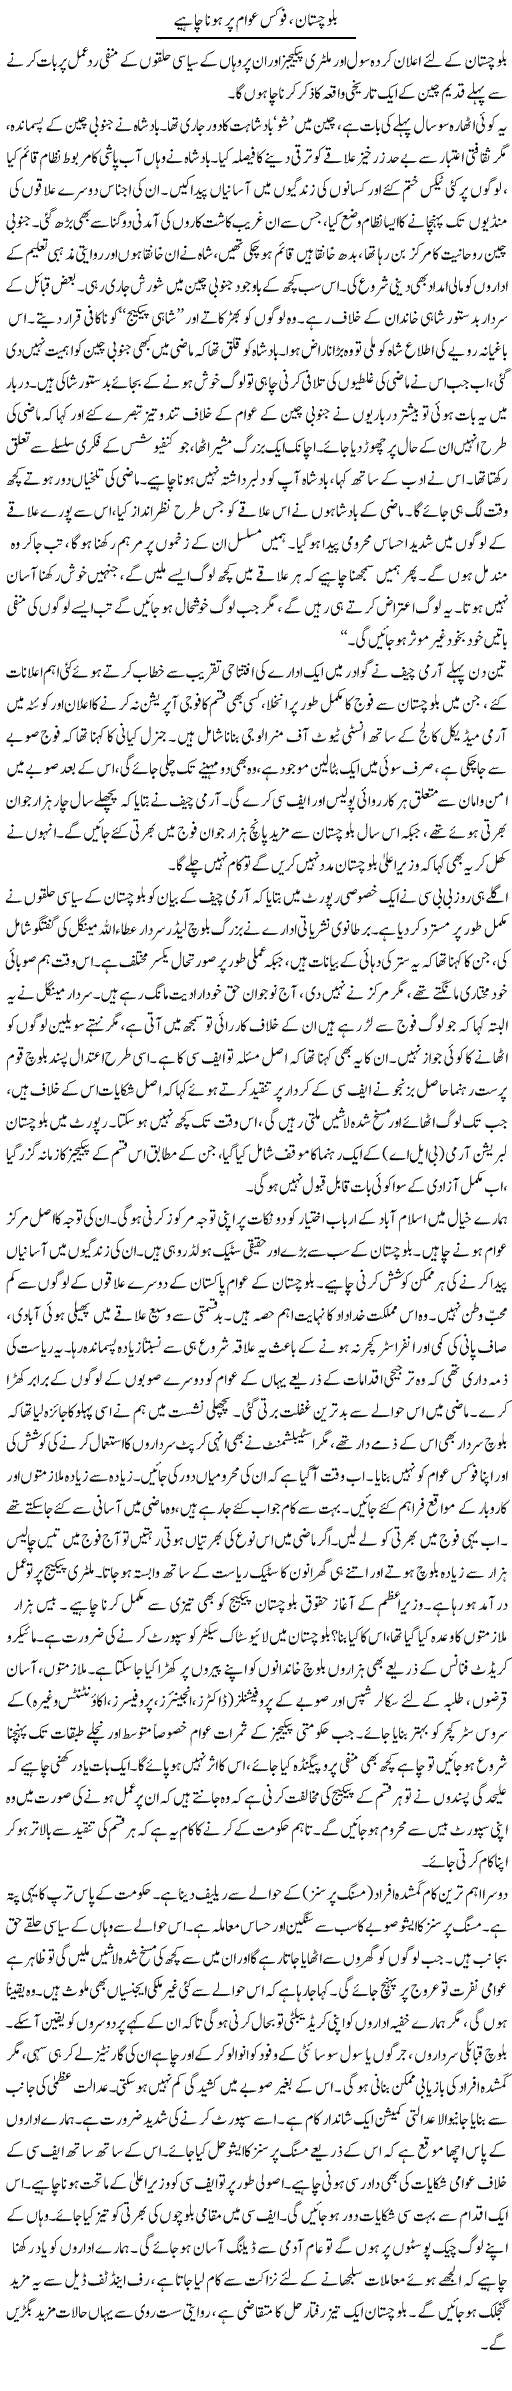 Balochistan Issue Express Column Aamir Khakwani 23 April 2011